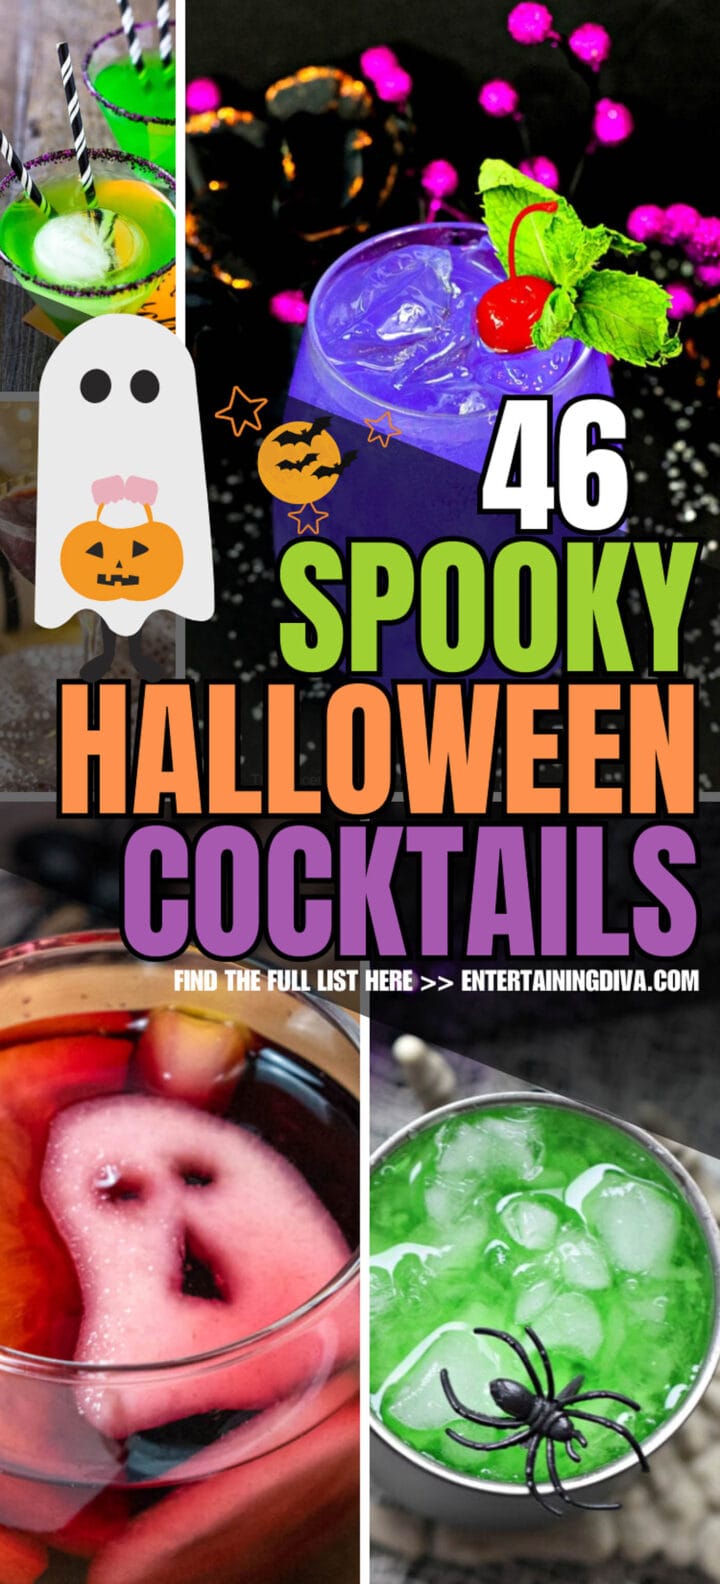 46 spooky halloween cocktails.